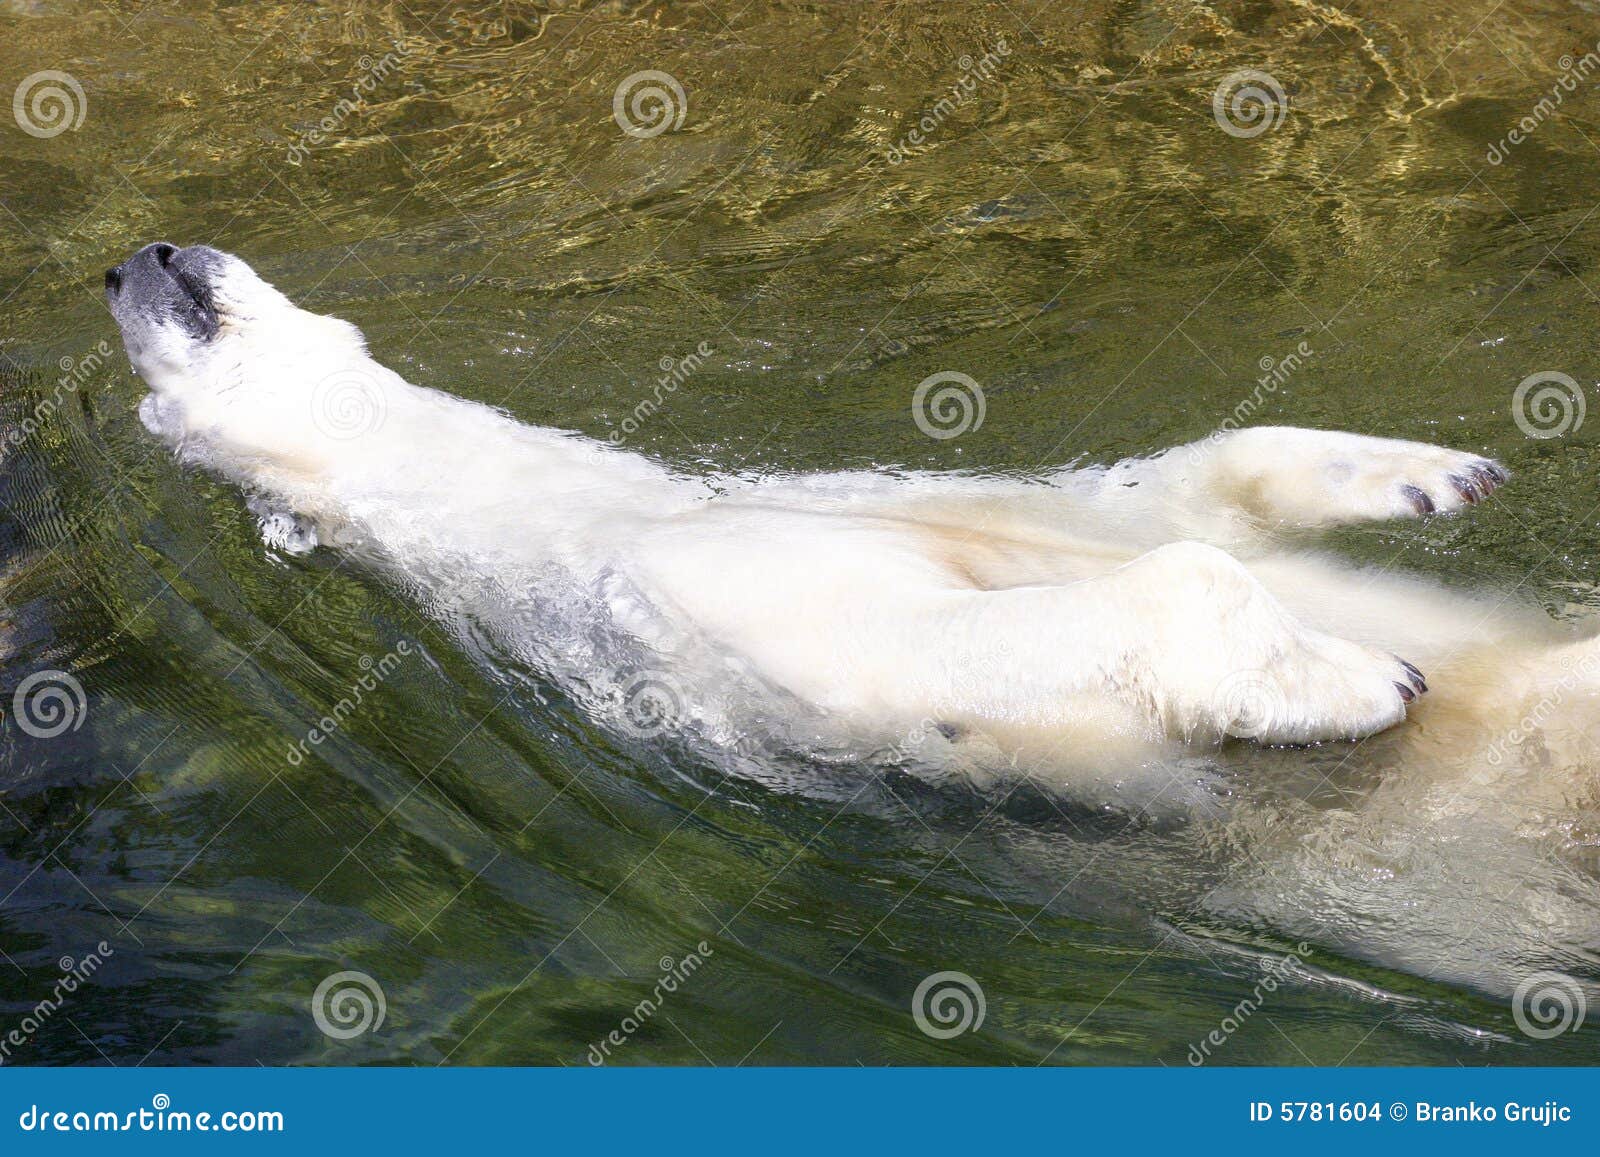 white polar bear enjoy in water